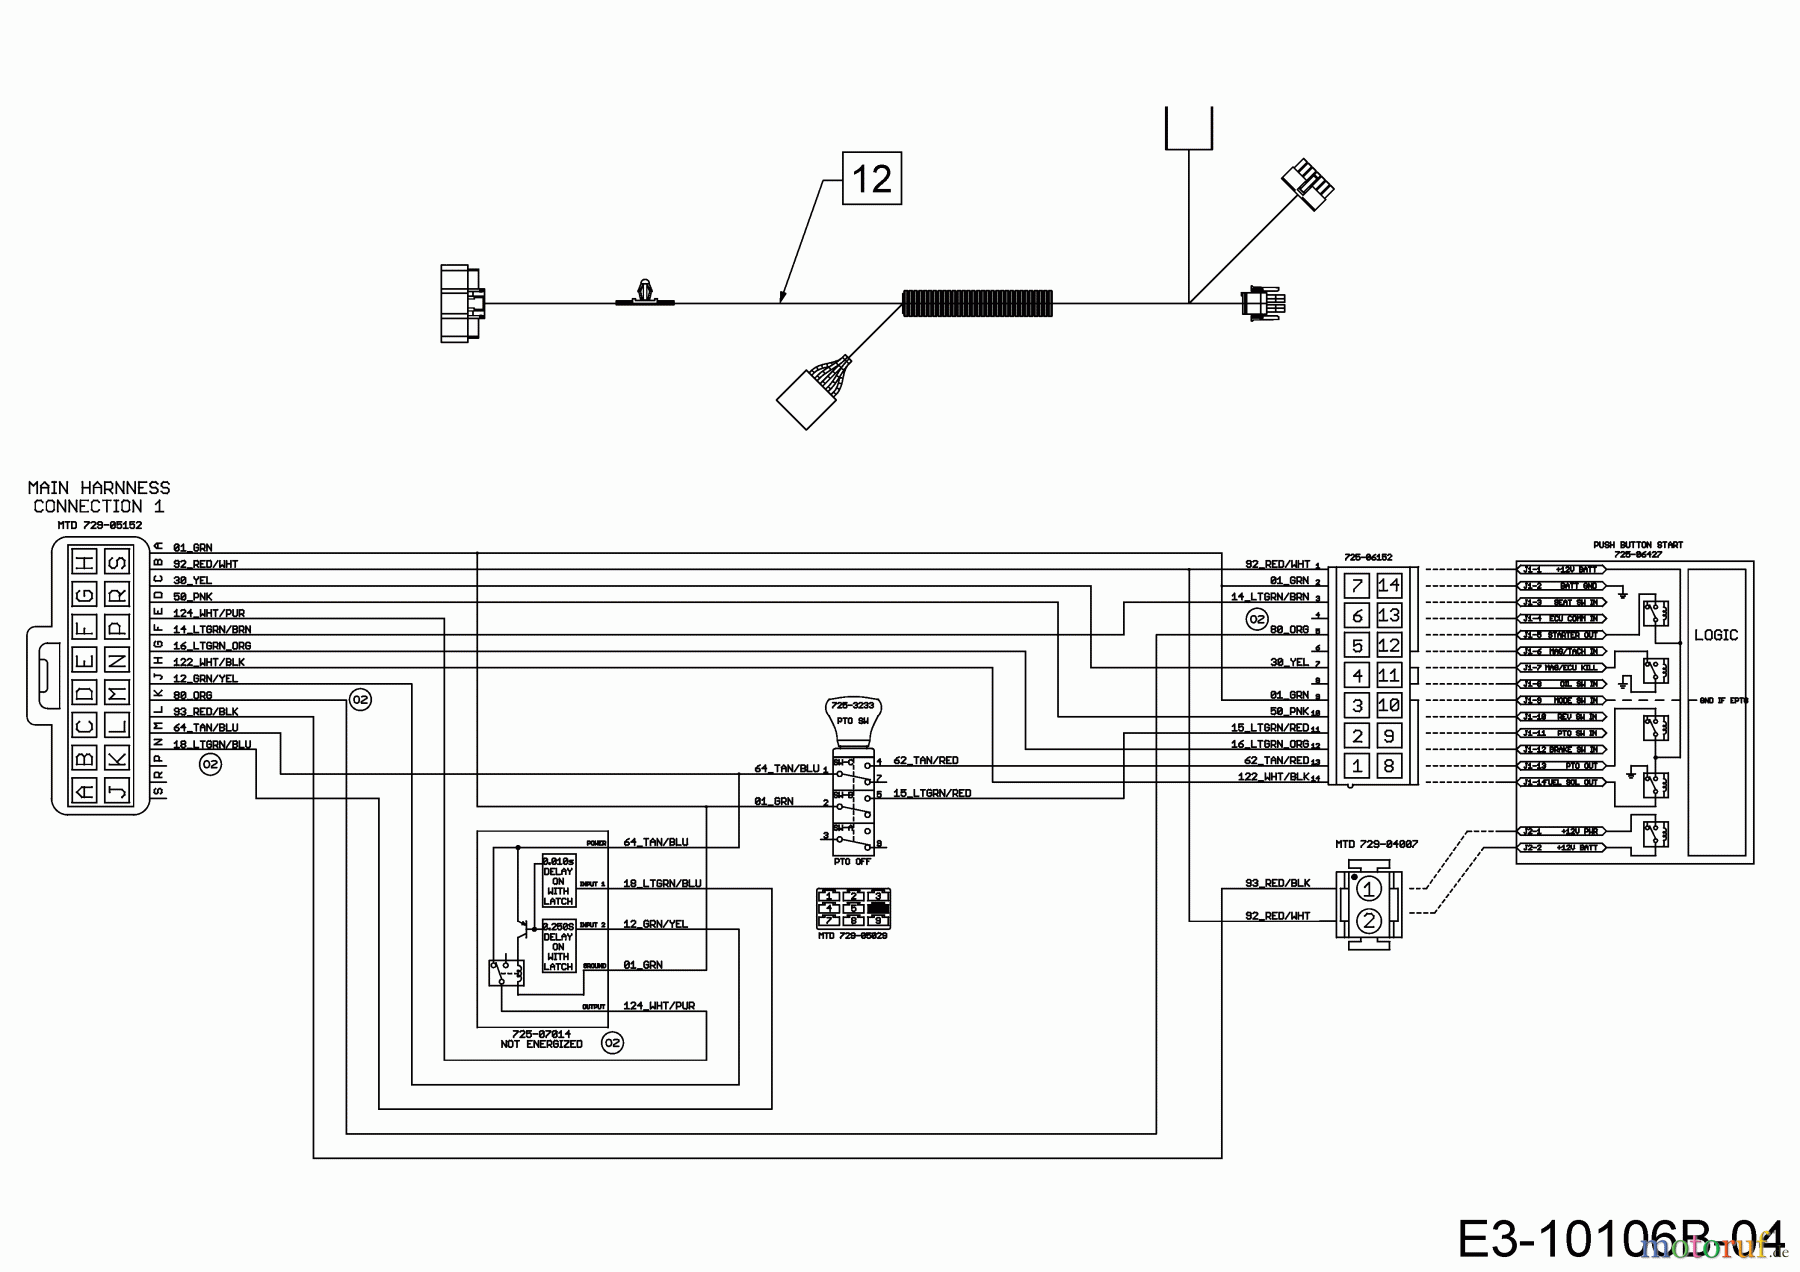  Gartenland Lawn tractors GL 17.5/106 H 13A8A1KR640  (2018) Wiring diagram dashboard